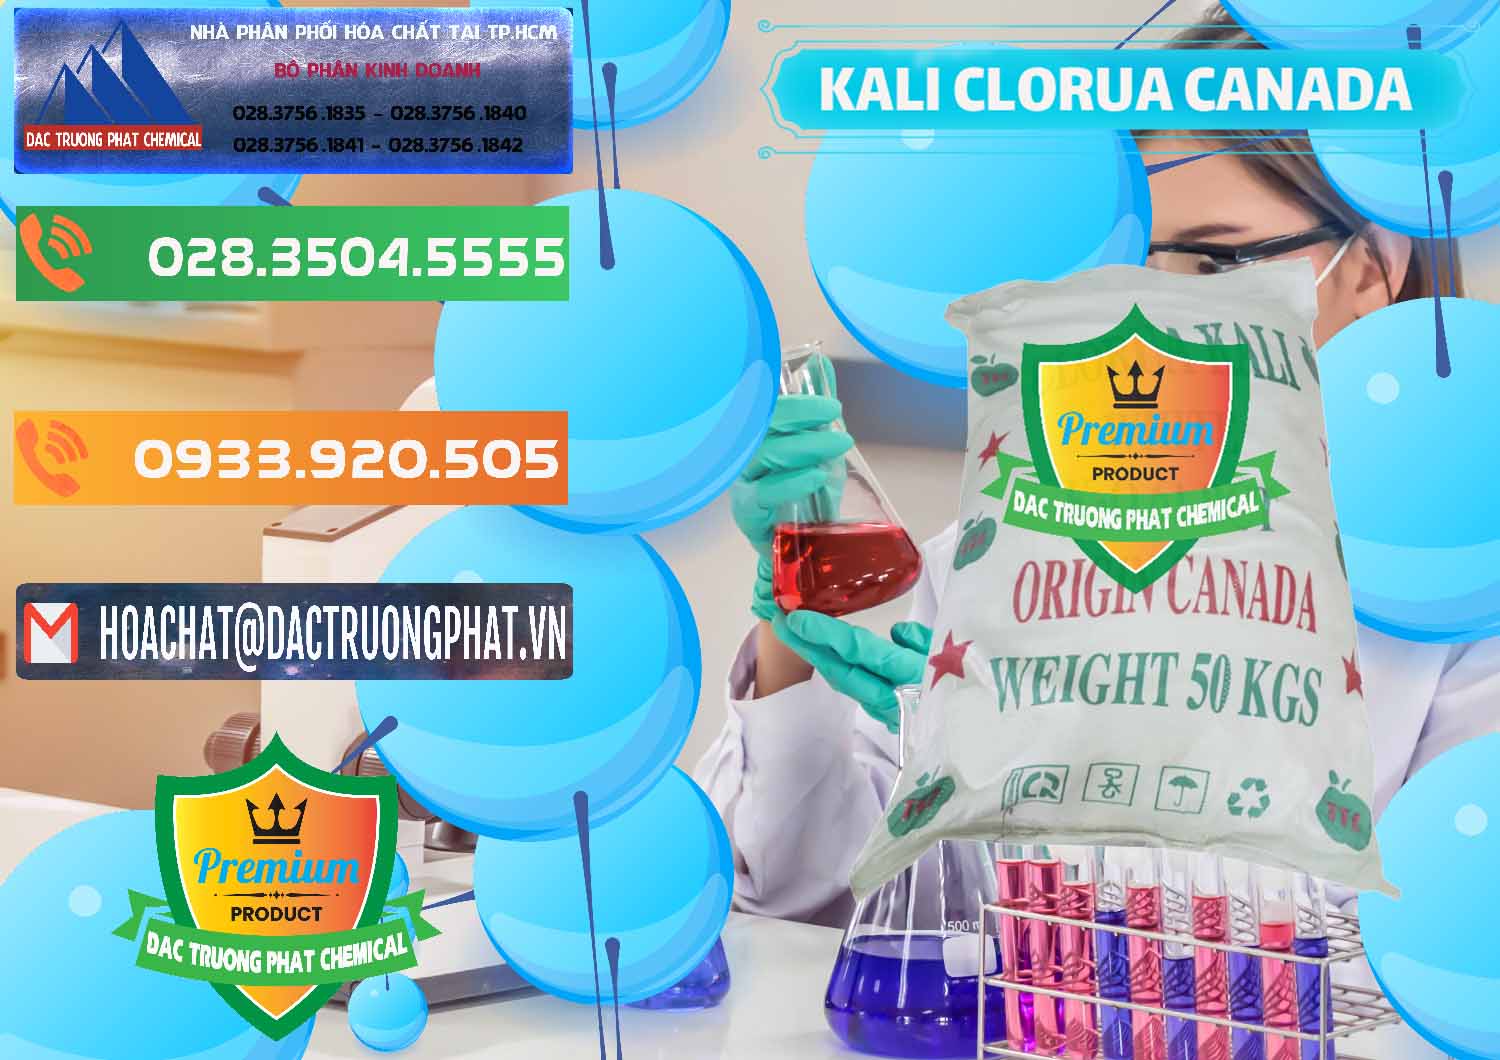 Cty bán và cung ứng KCL – Kali Clorua Trắng Canada - 0437 - Đơn vị chuyên kinh doanh và cung cấp hóa chất tại TP.HCM - hoachatxulynuoc.com.vn